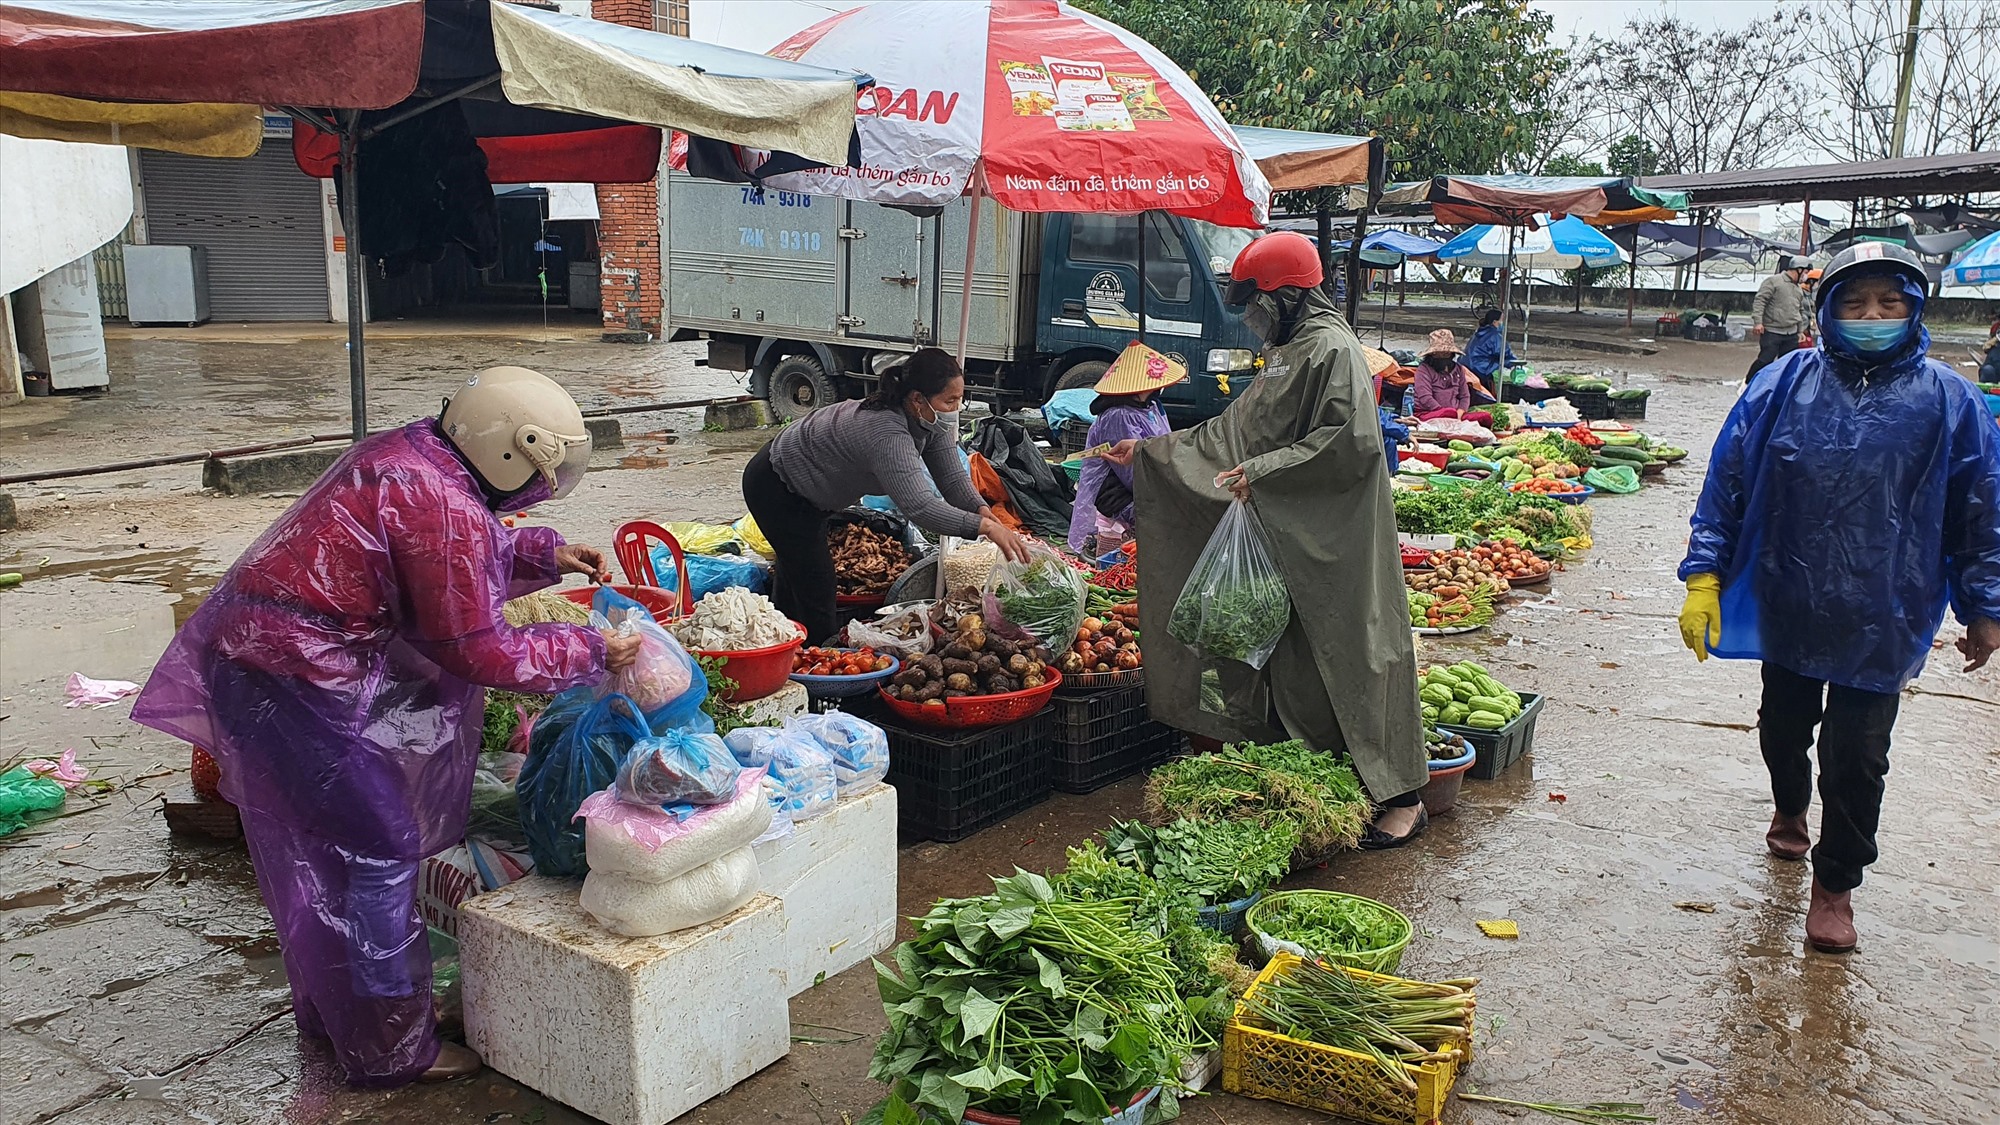 Đi chợ Đông Hà đầu năm, nhiều người chỉ mua chút lộc đầu xuân với mong muốn gặp nhiều may mắn, làm ăn phát đạt trong năm mới - Ảnh: T.Q